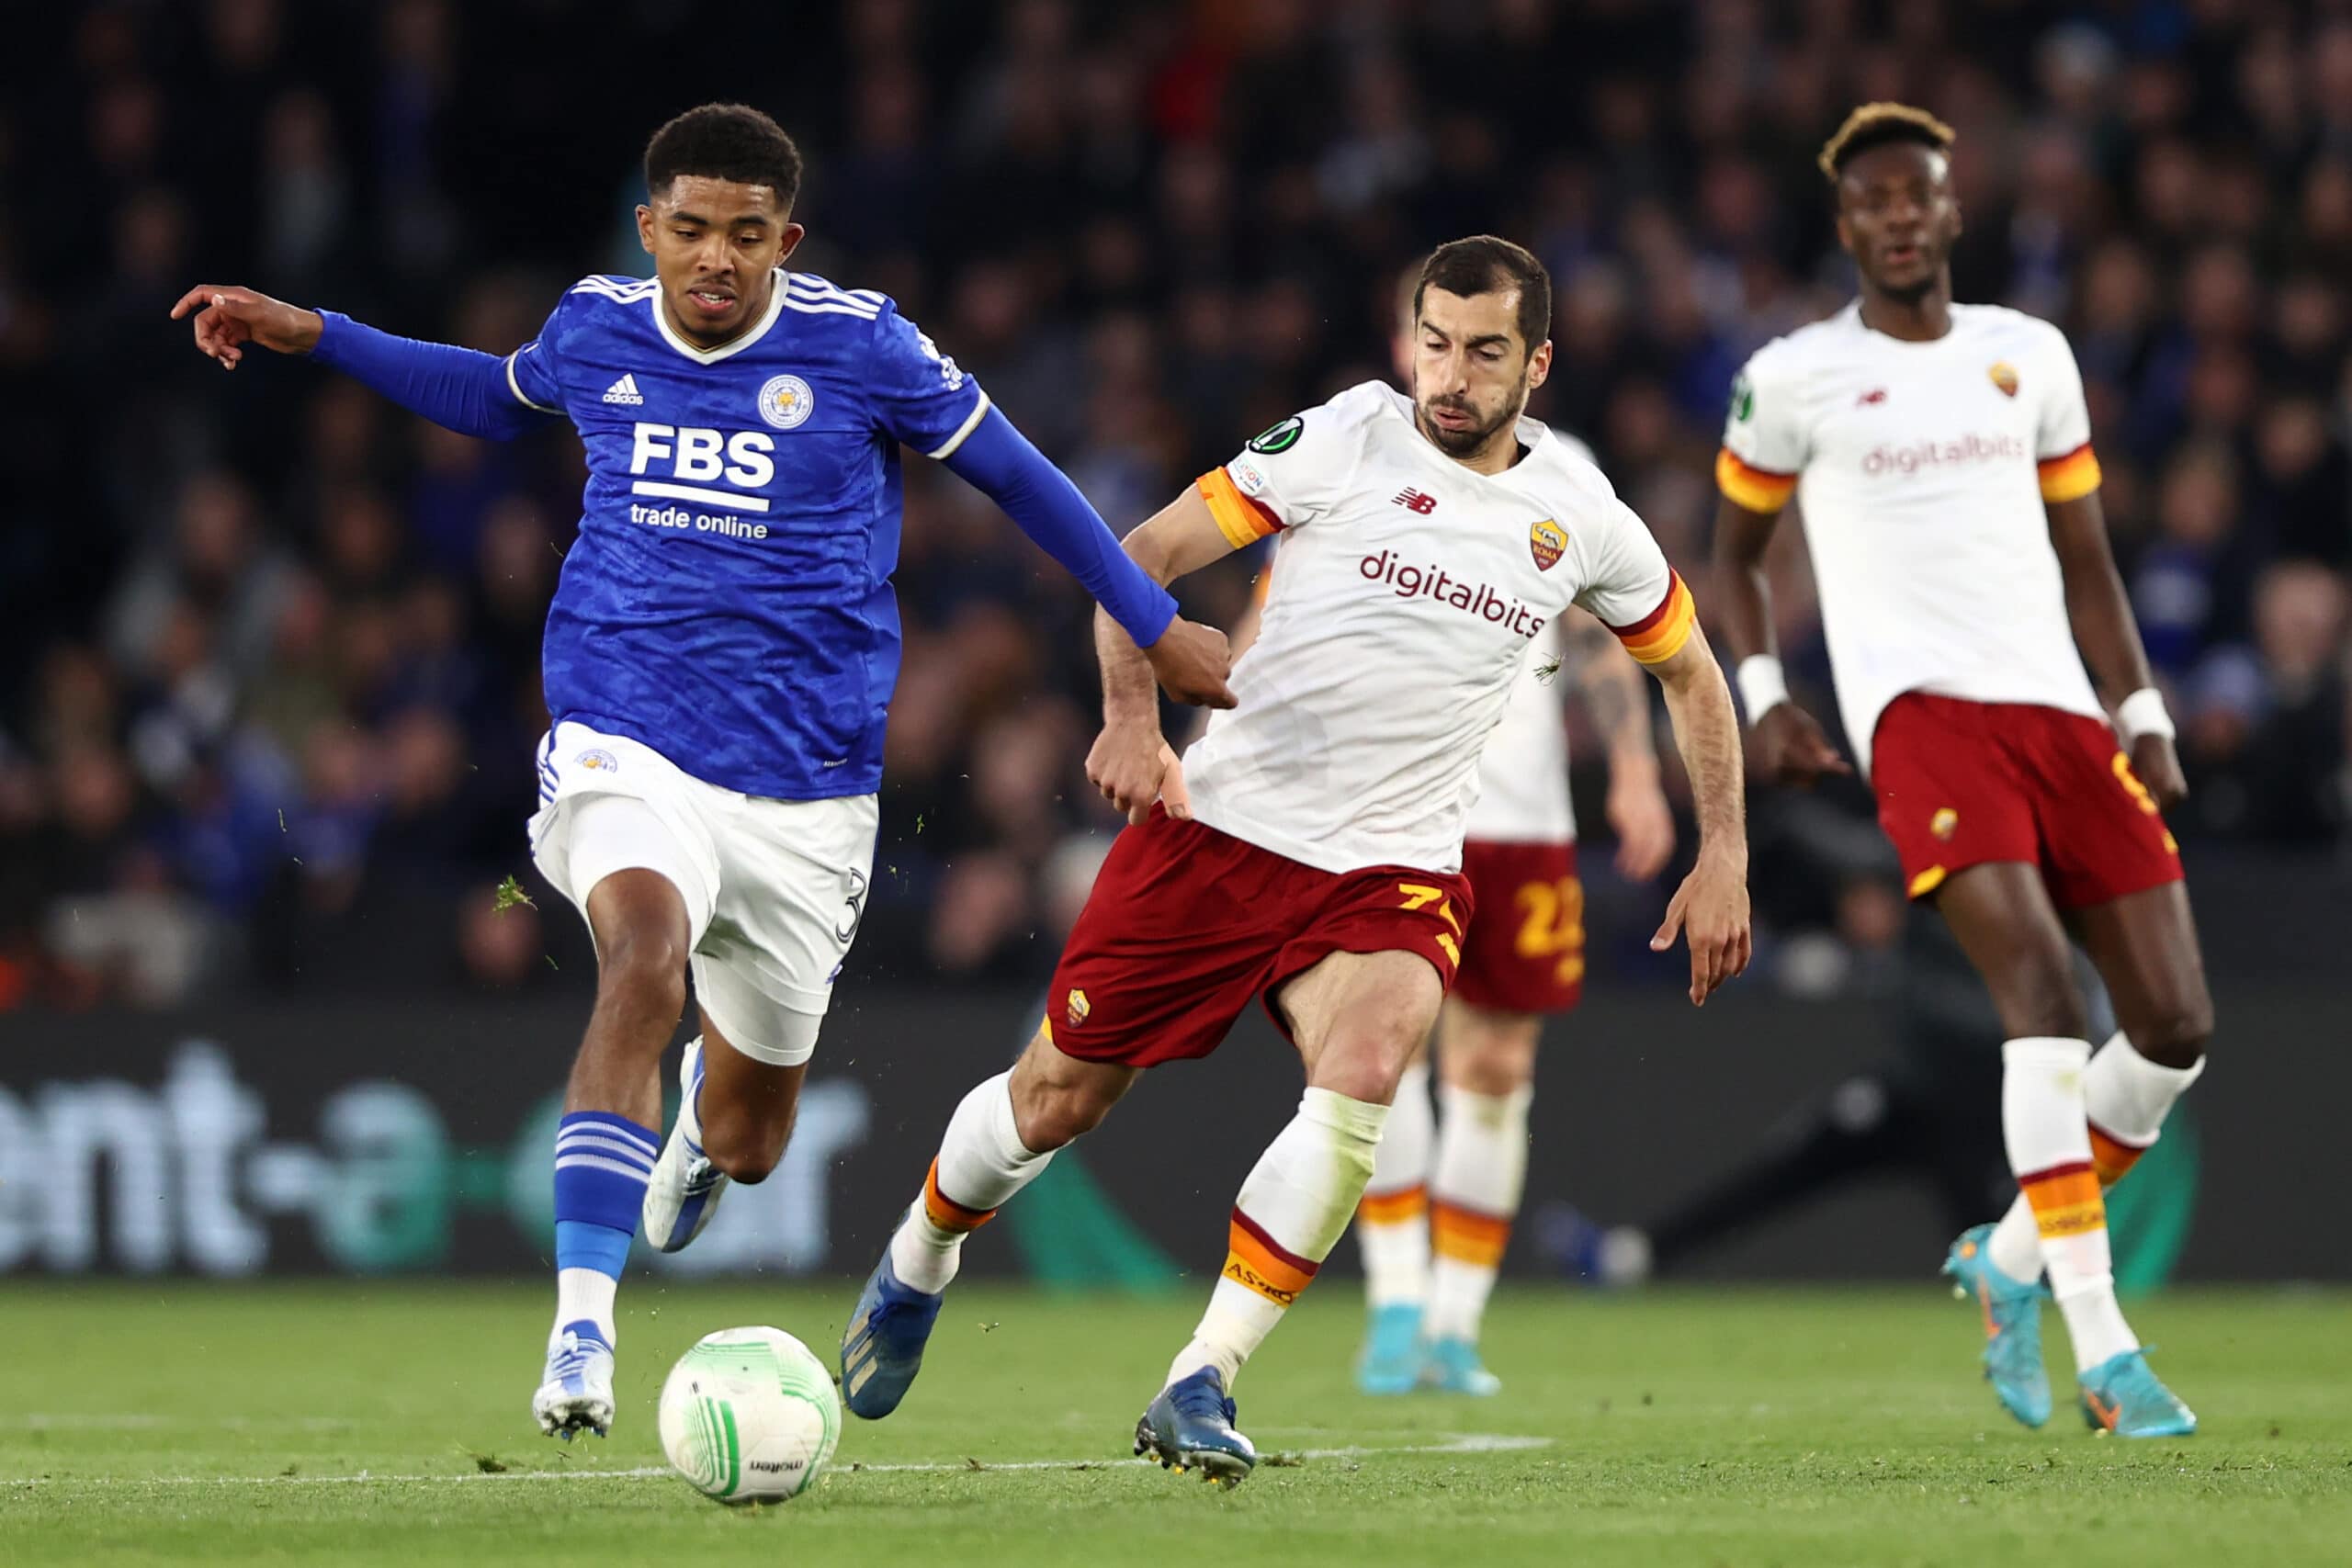 AS Roma – Leicester, les compos officielles sont là